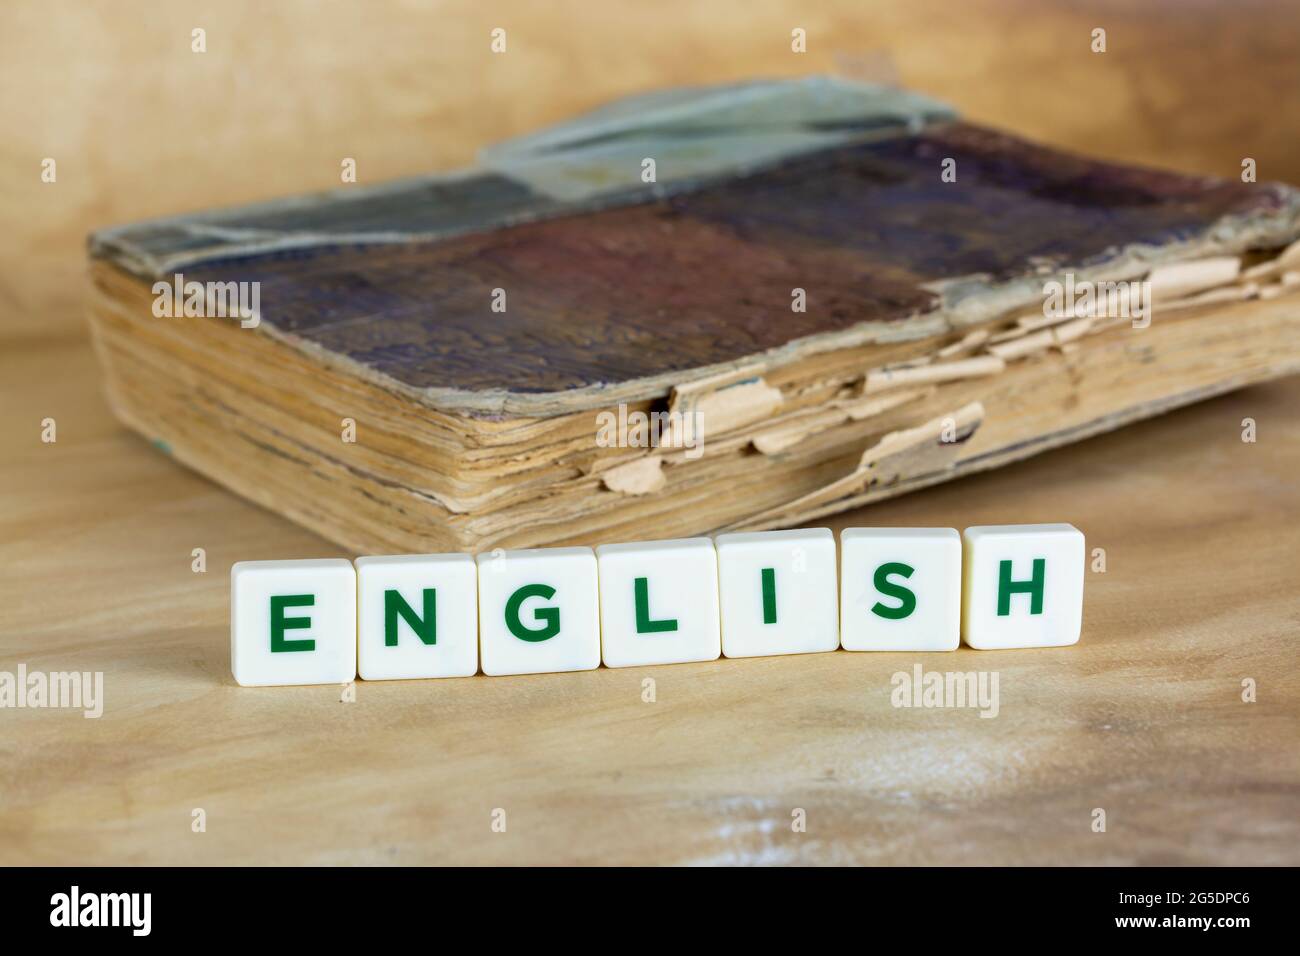 Sul tavolo si trovano il libro e i cubetti di legno con l'iscrizione inglese. Il concetto di apprendimento delle lingue straniere. Foto Stock